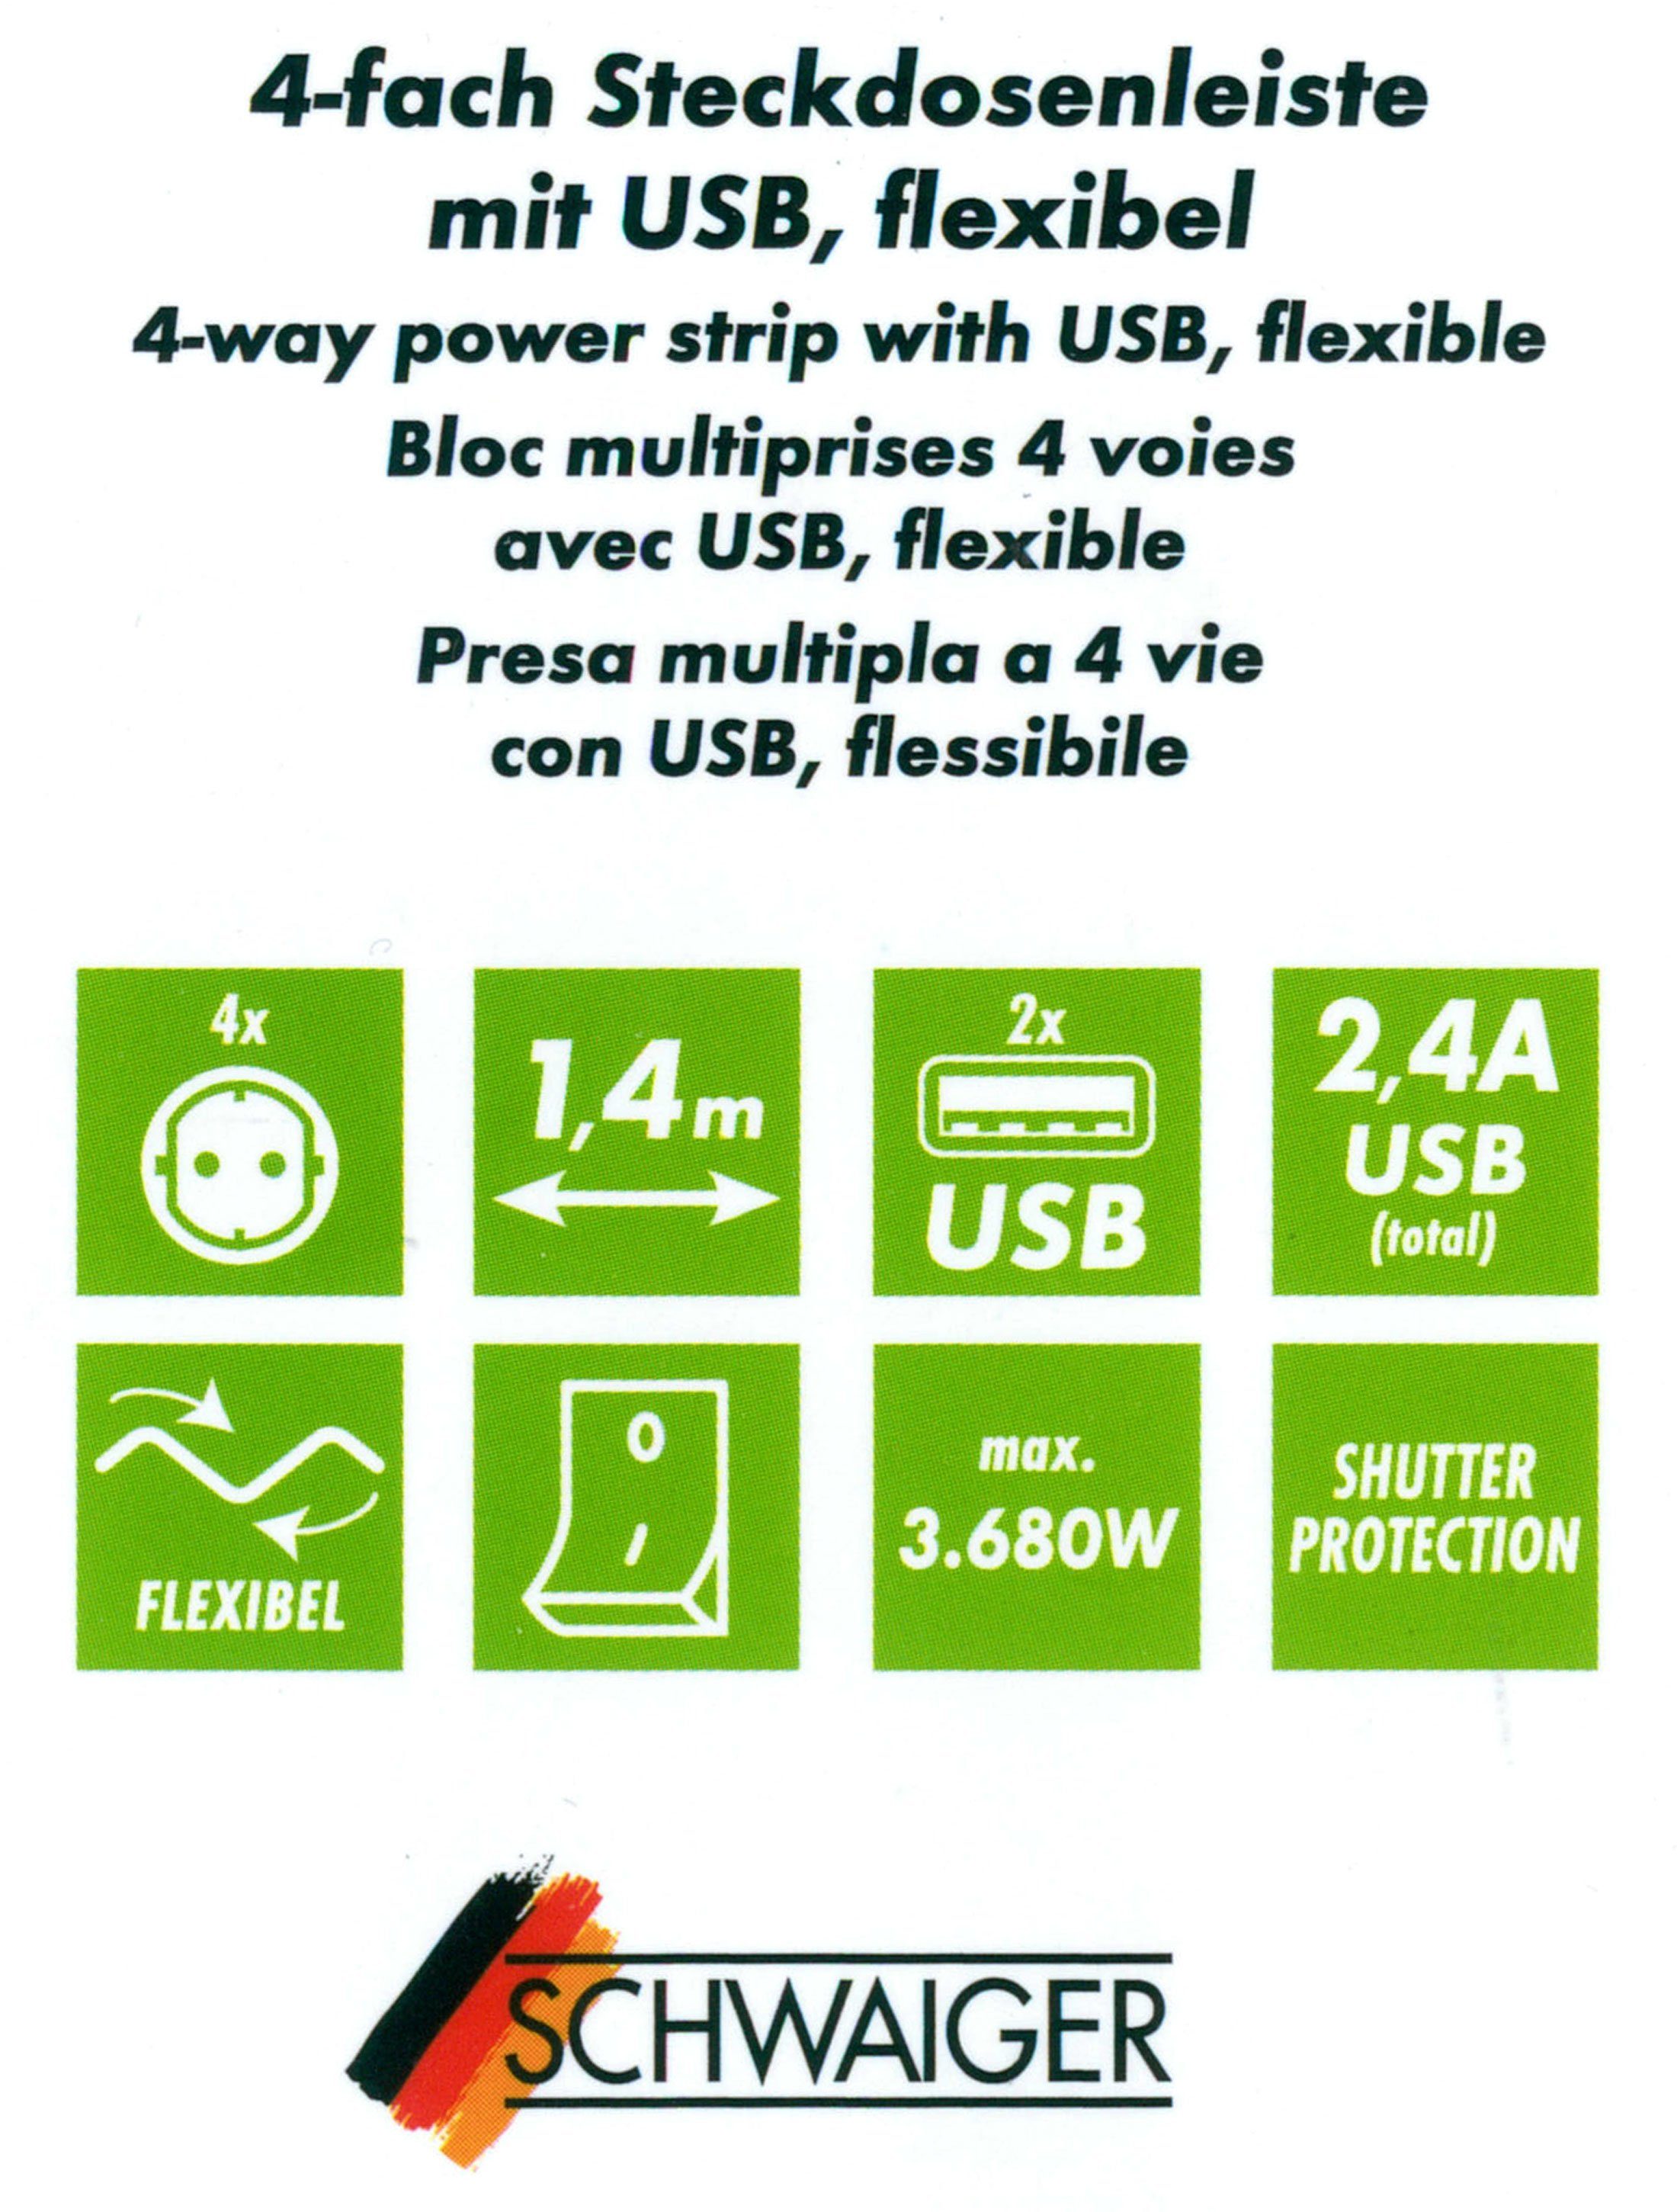 4-fach x 12w / Steckdosenleiste Mehrfachstecker (4,2A) Schalterbeleuchtung, USB-Anschlüsse, Ausschalter, inkl. Ausschalter, separate 1,5M schwarz USB USB Schwaiger Mehrfachsteckdose x 2 Flexible kabel), 2 Einsatz, Schalter / Ein- (Ein-